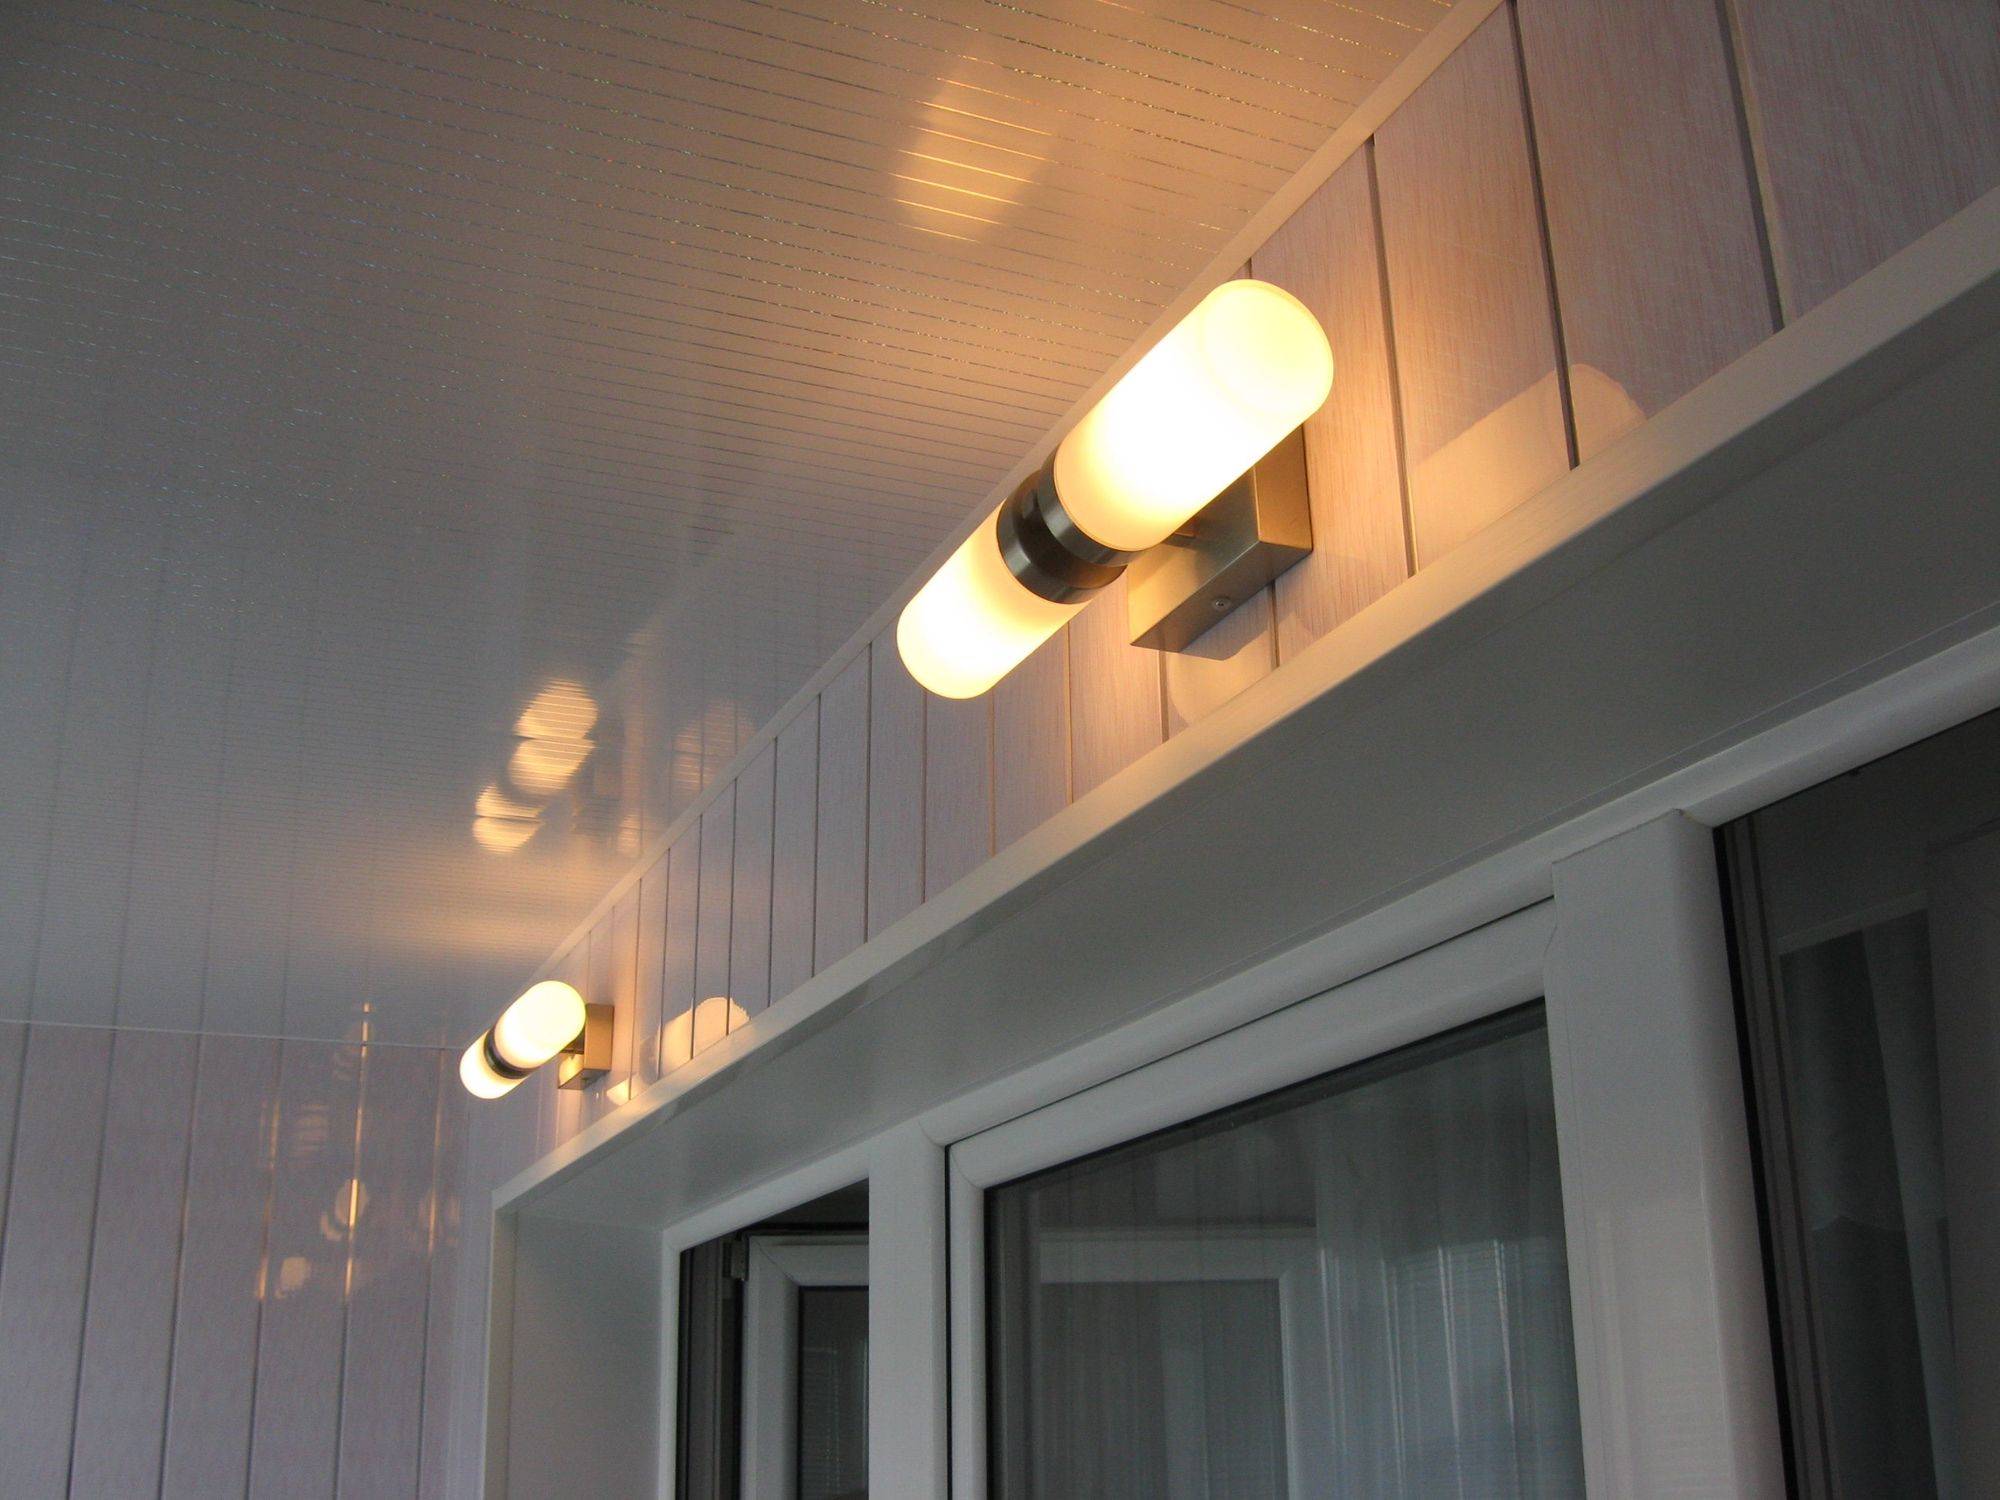 Как на балкон провести свет и сделать освещение, светильники на балкон фото галерея